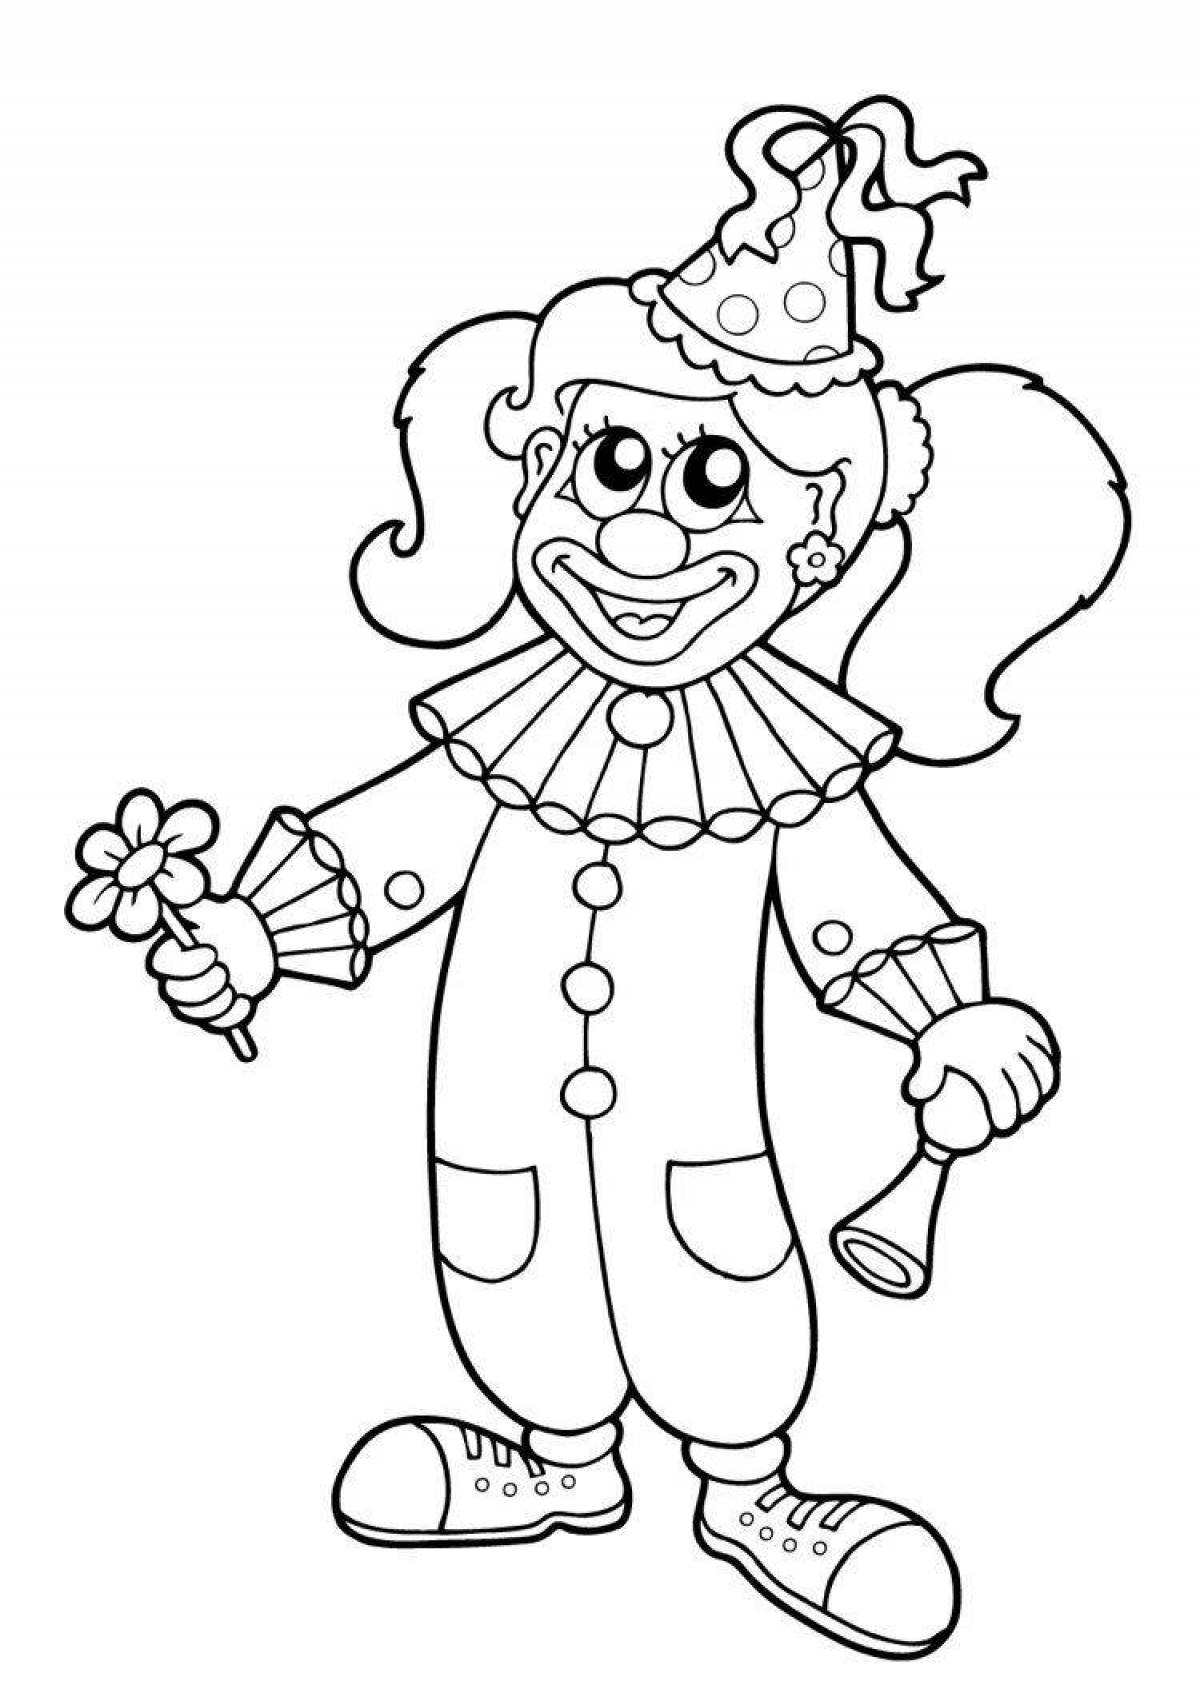 Яркий клоун-раскраска для детей 6-7 лет